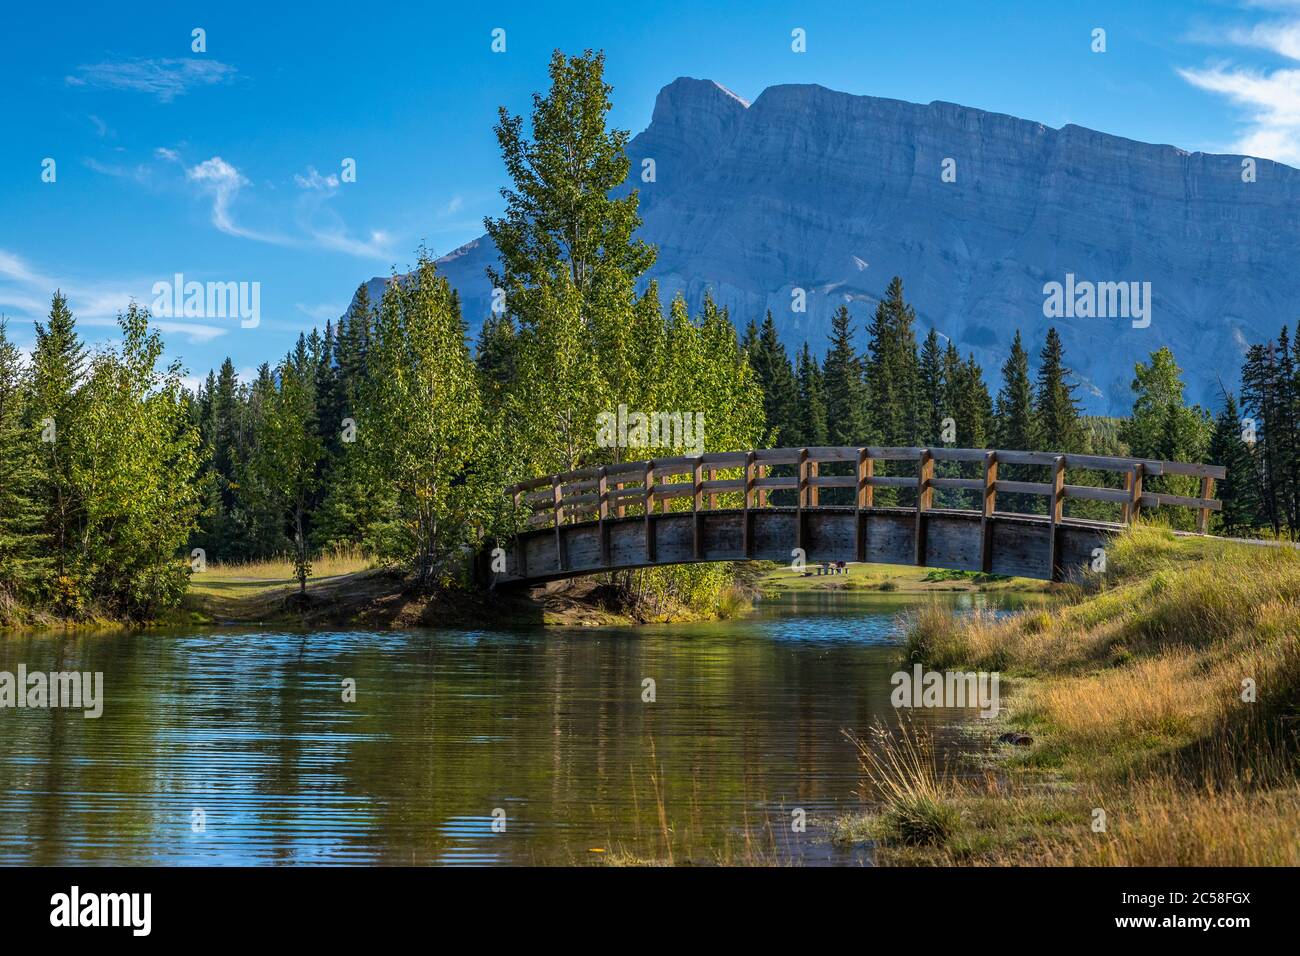 Magnifique pont en bois qui traverse les étangs de Cascade avec le mont Rundle en arrière-plan, parc national Banff, Alberta, Canada Banque D'Images